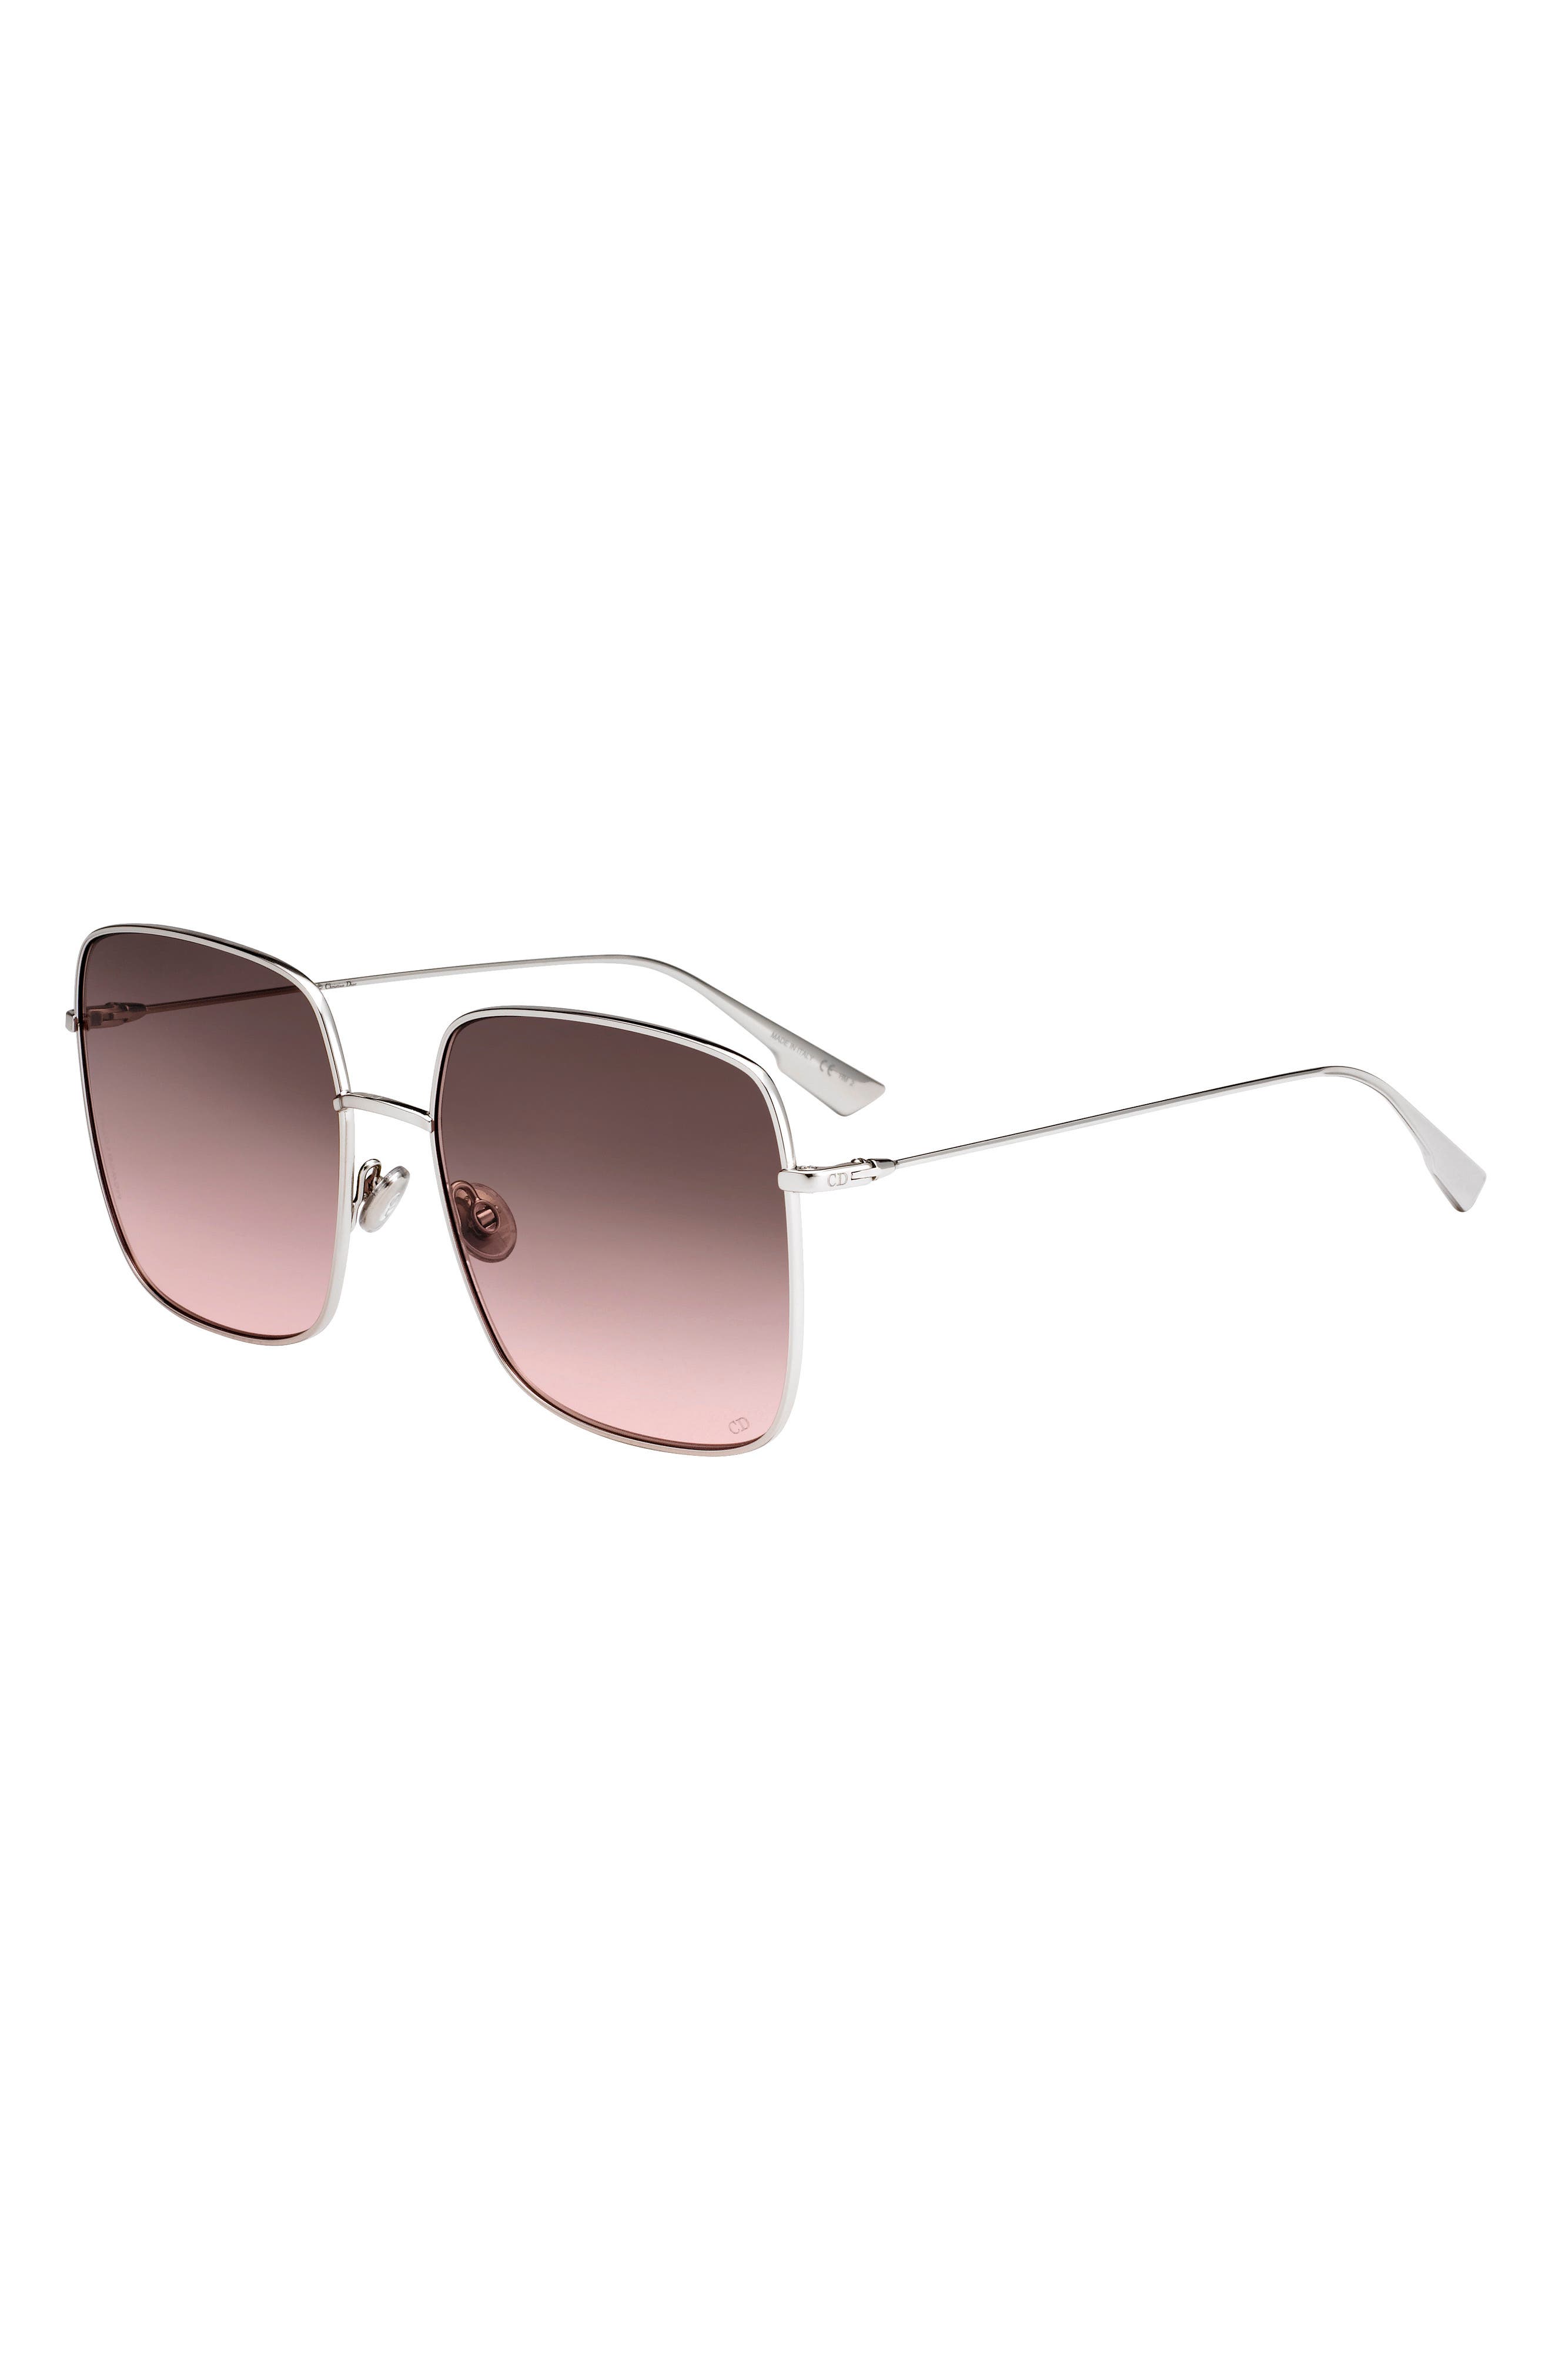 dior stellaire square sunglasses